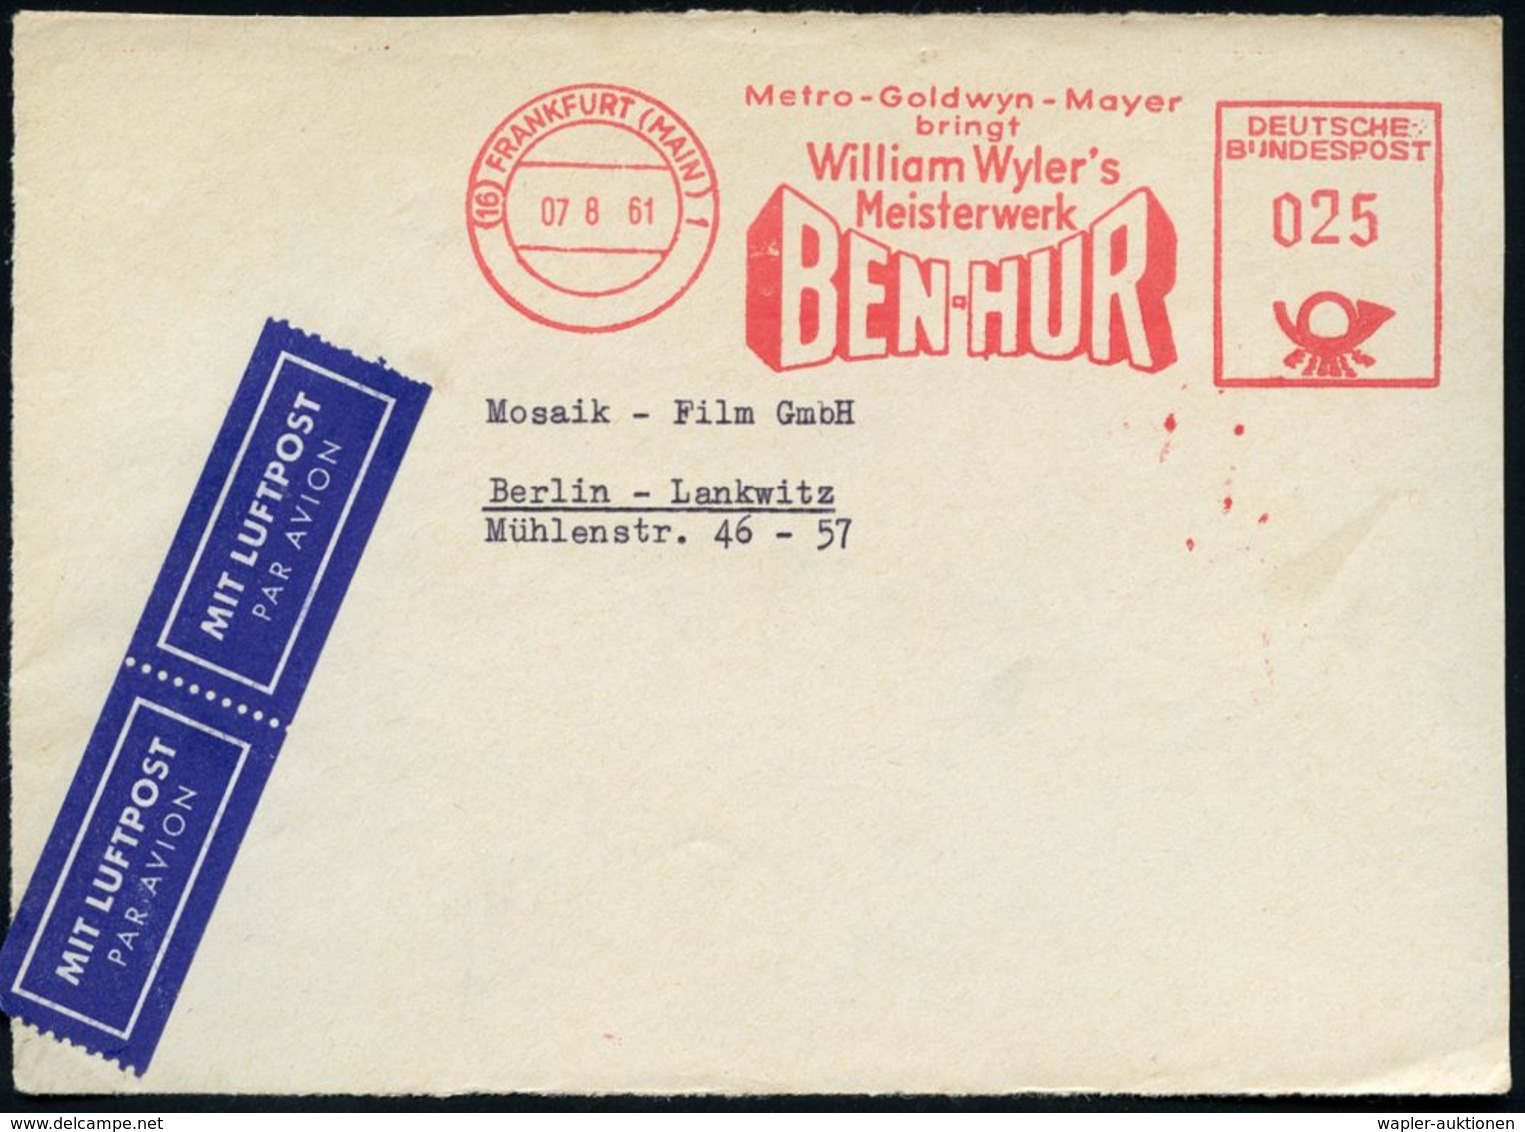 (16) FRANKFURT (MAIN) 1/ Metro-Goldwyn-Mayer/ Bringt/ William Wyler's/ BEN-HUR 1960 (6.12.) Seltener AFS = Film über Die - Archeologia